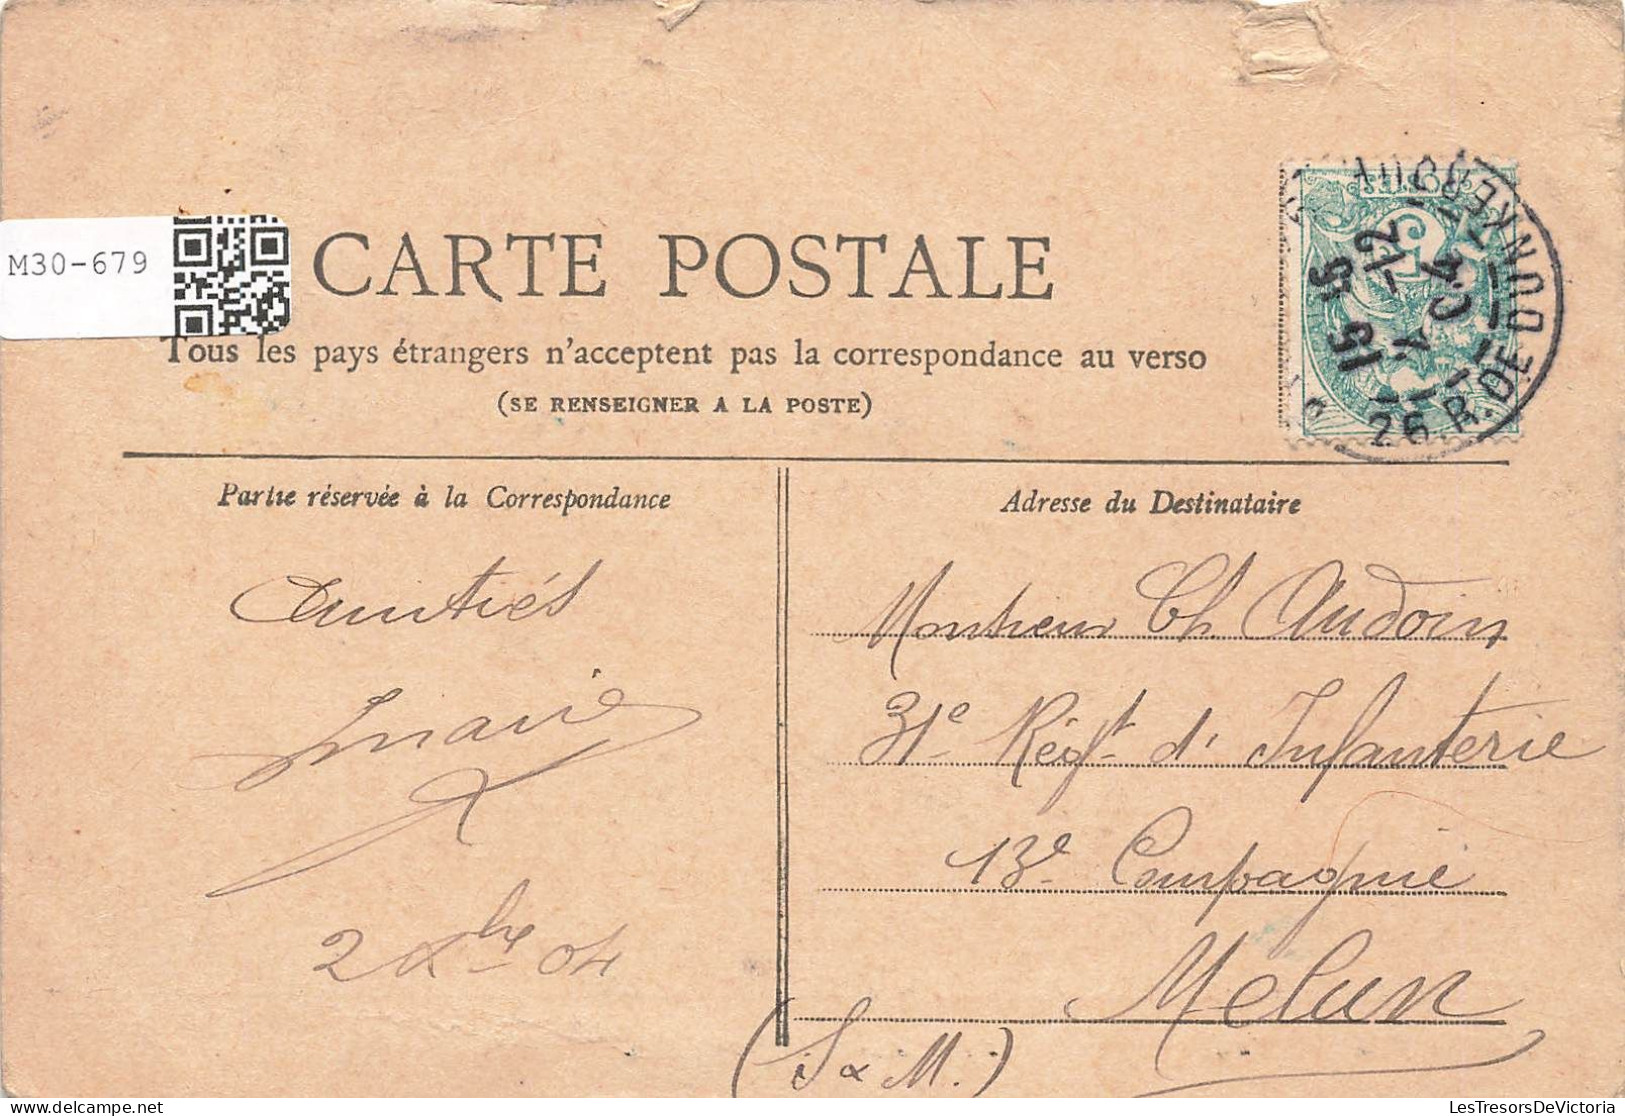 FRANCE - Paris - Vue Sur Le Trocadéro - Collection Petit Journal - Carte Postale Ancienne - Otros Monumentos